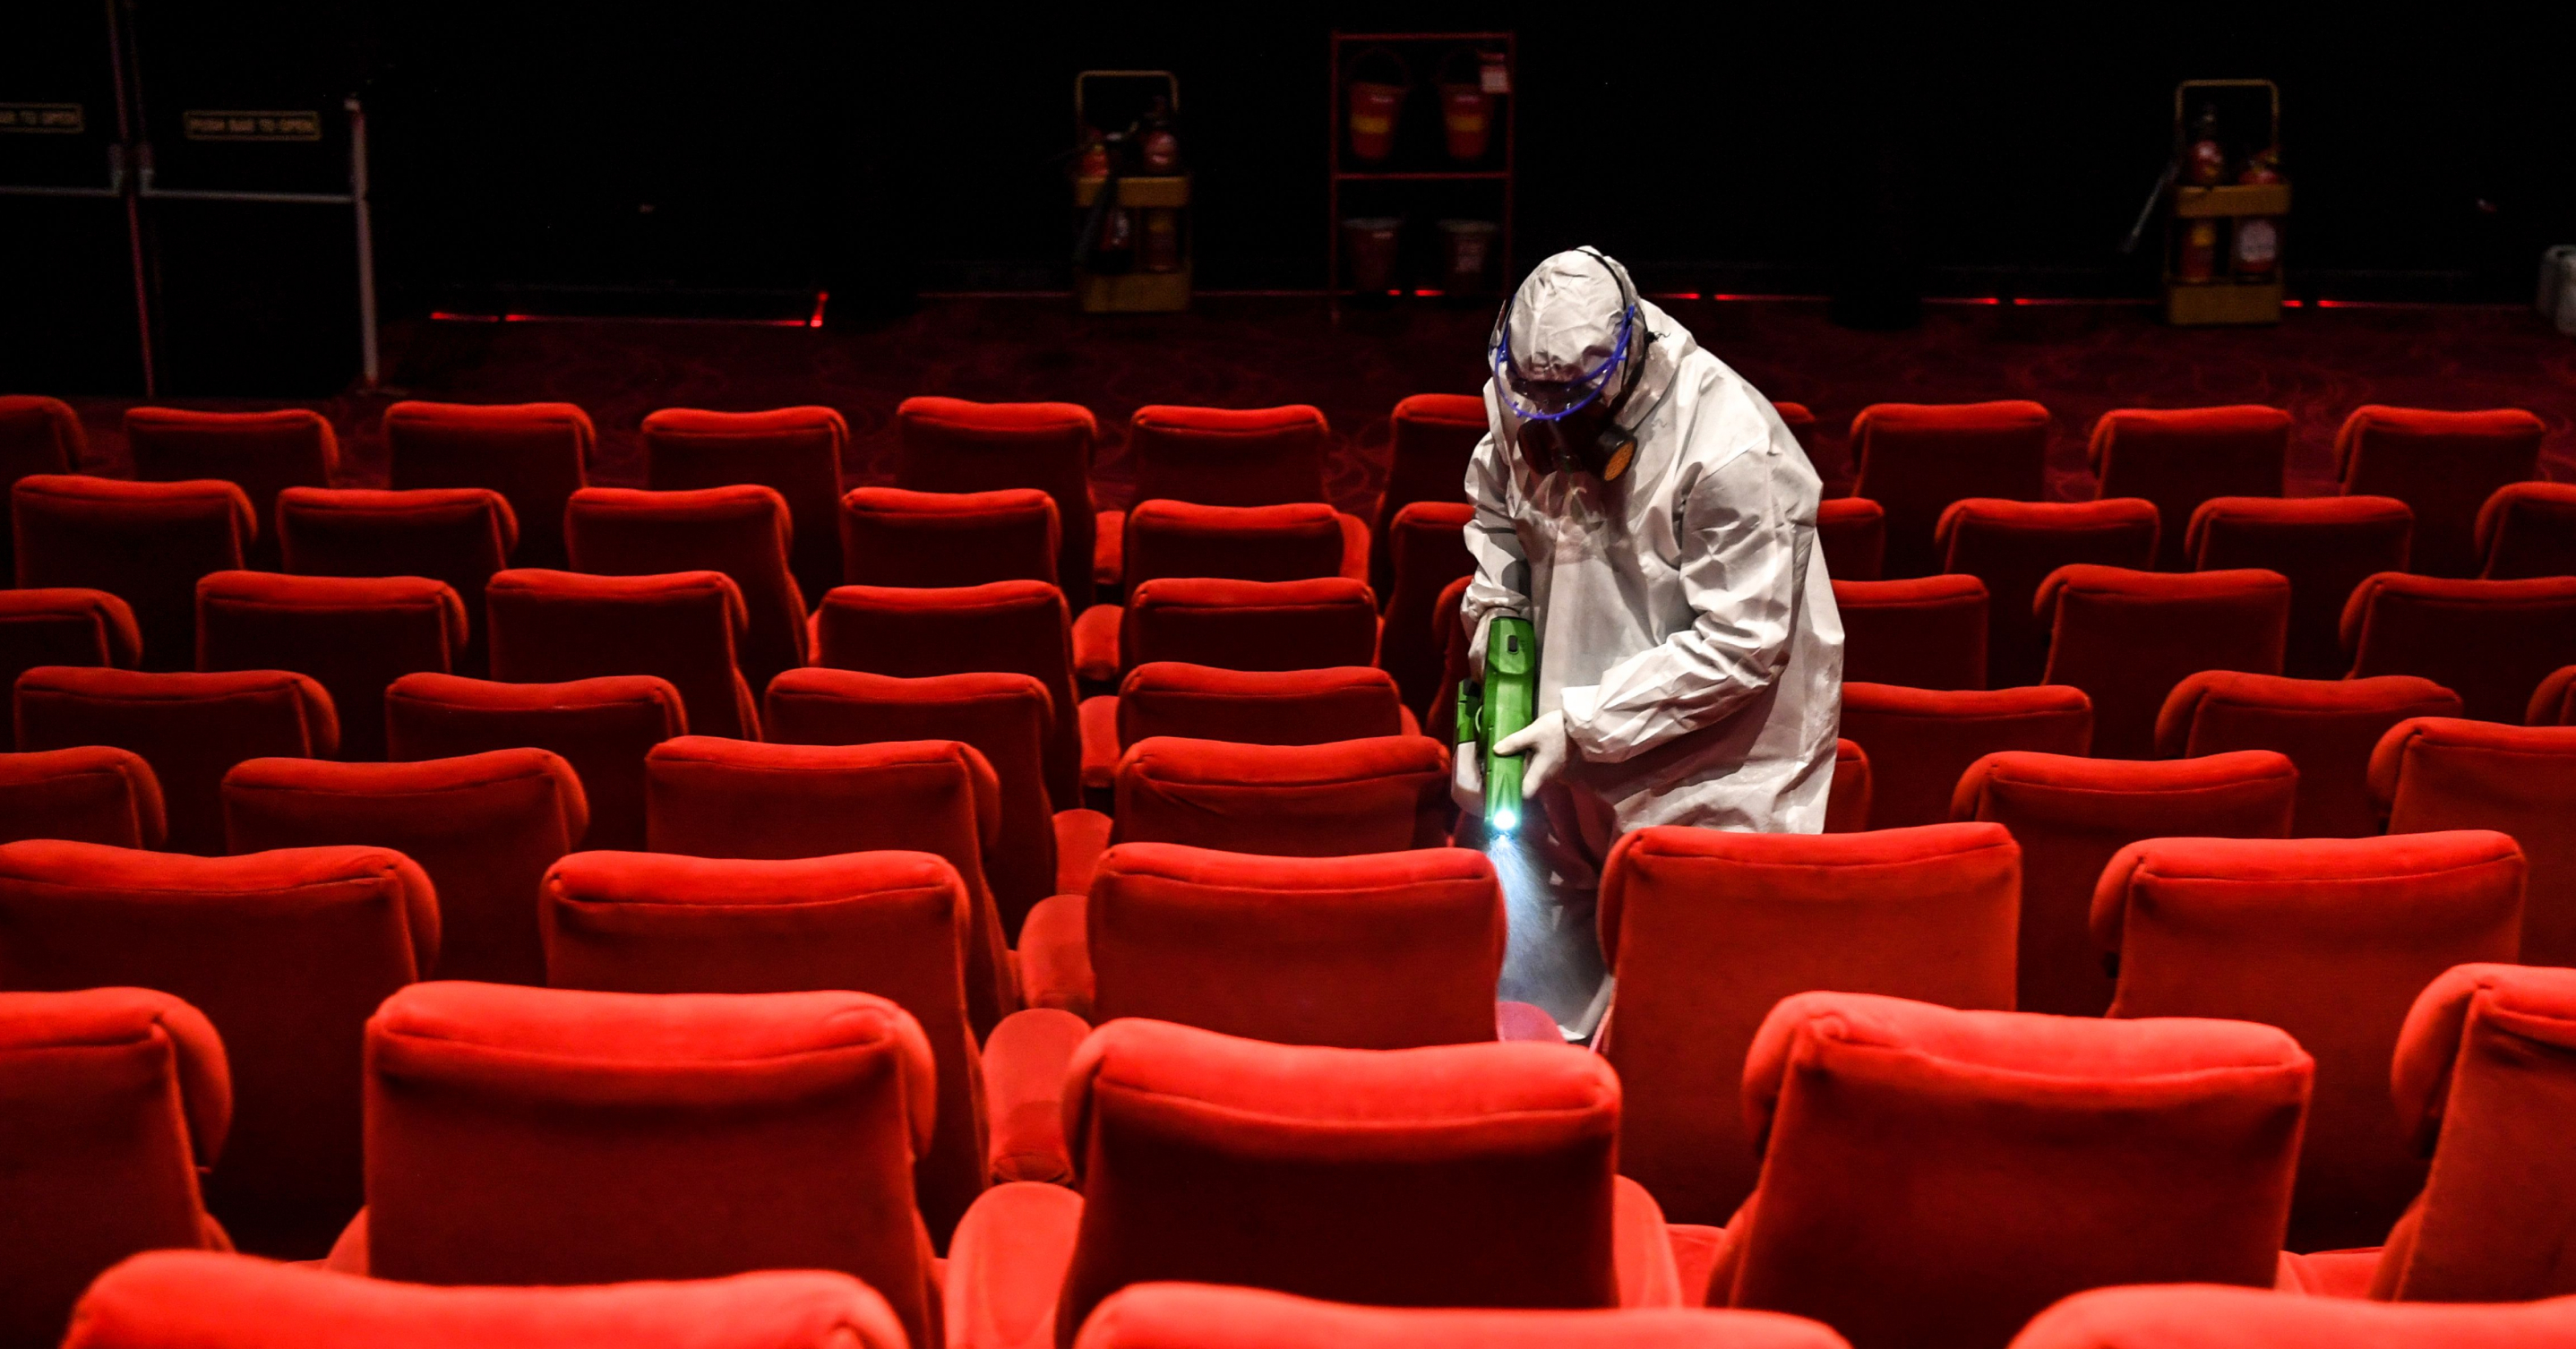 A worker in hazmat gear sanitizing a theatre